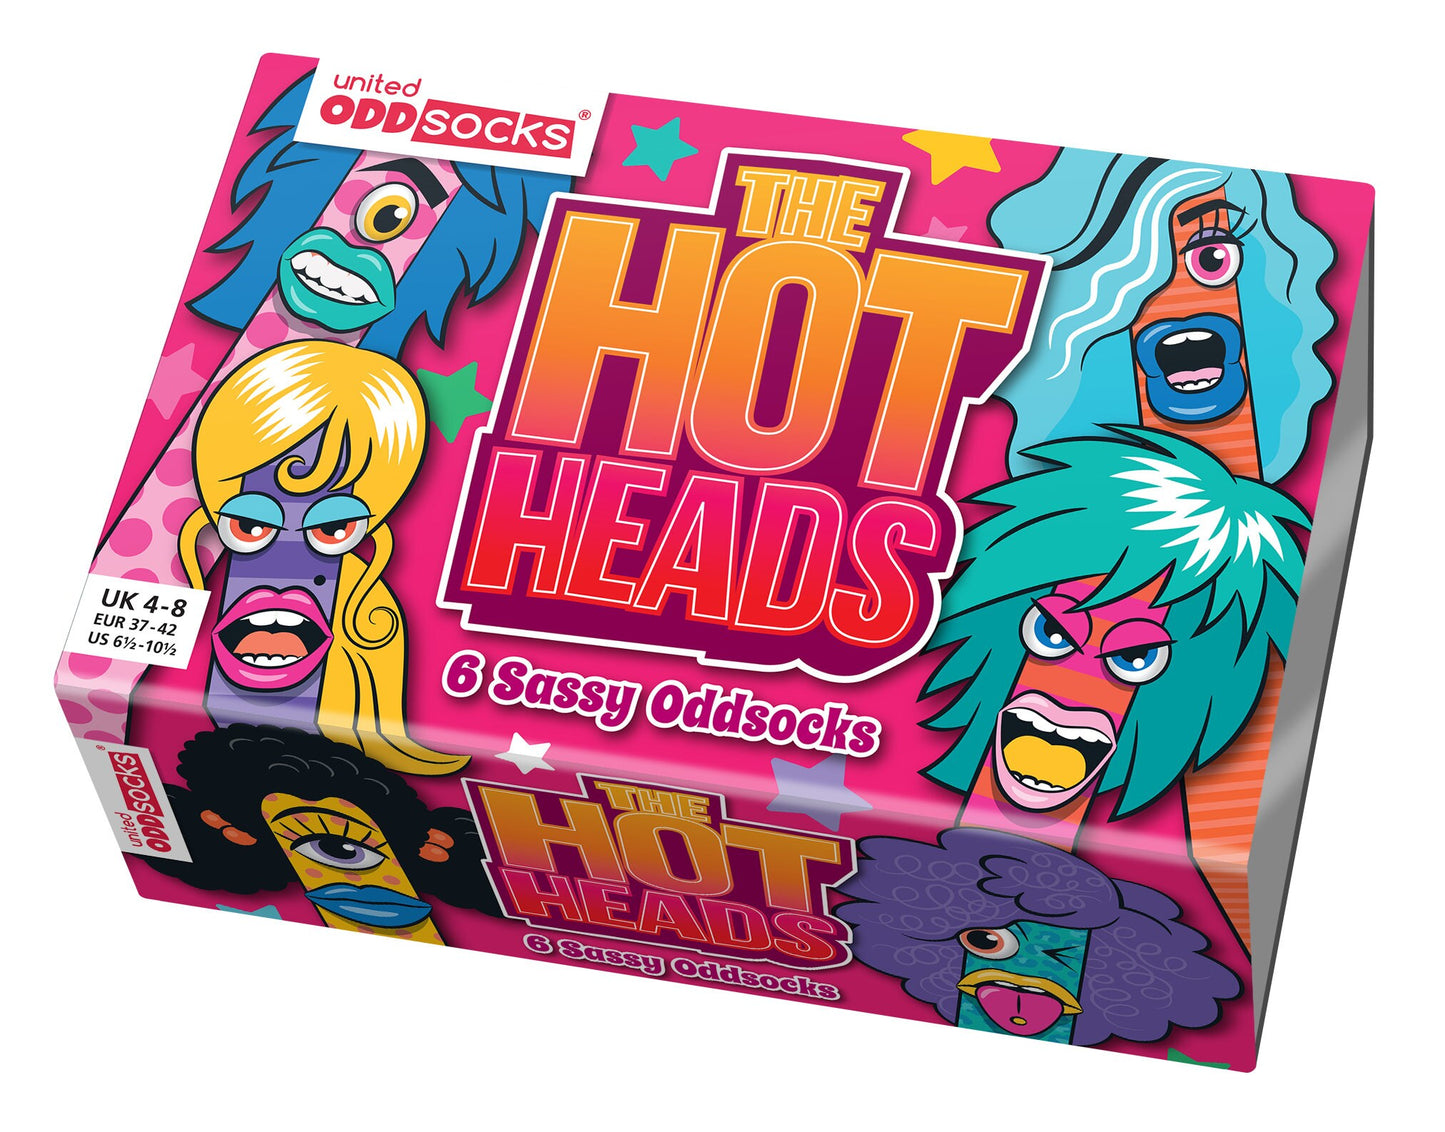 Oddsocks Hot Heads 6 Ladies Odd Socks